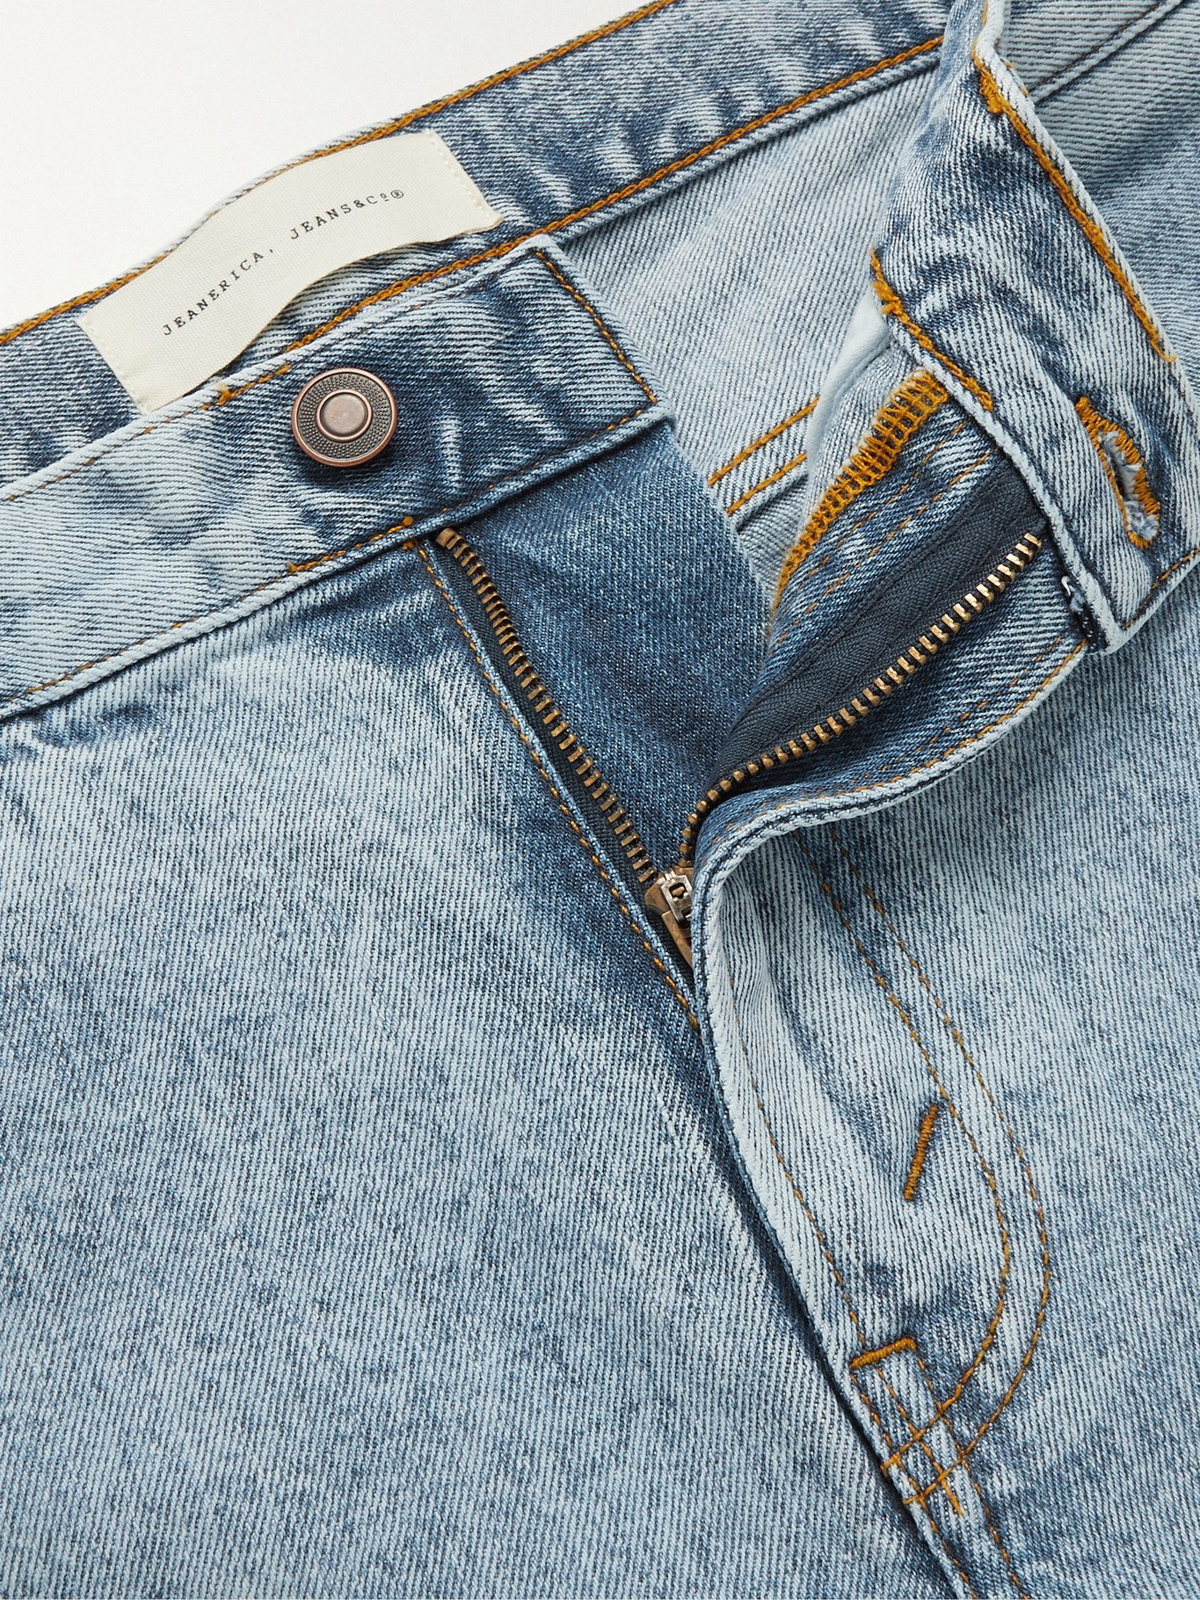 JEANERICA - Slim-Fit Organic Stretch-Denim Jeans - Blue Jeanerica